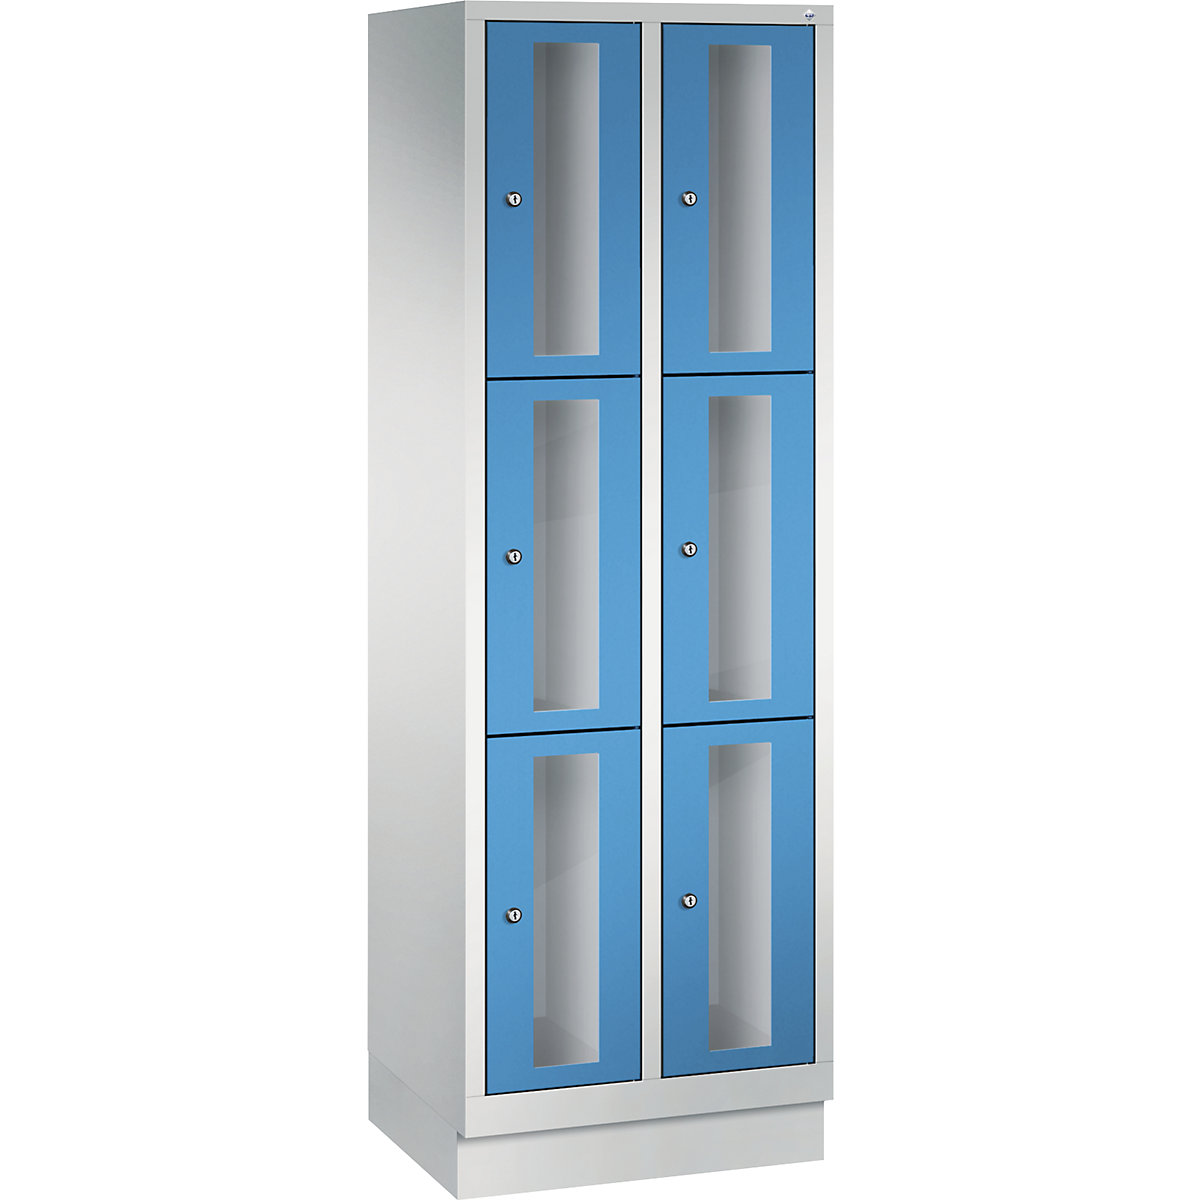 CLASSIC rekeszes szekrény, 510 mm-es rekeszmagasság, lábazattal – C+P, 6 rekesz, szélesség 610 mm, világoskék ajtó-6